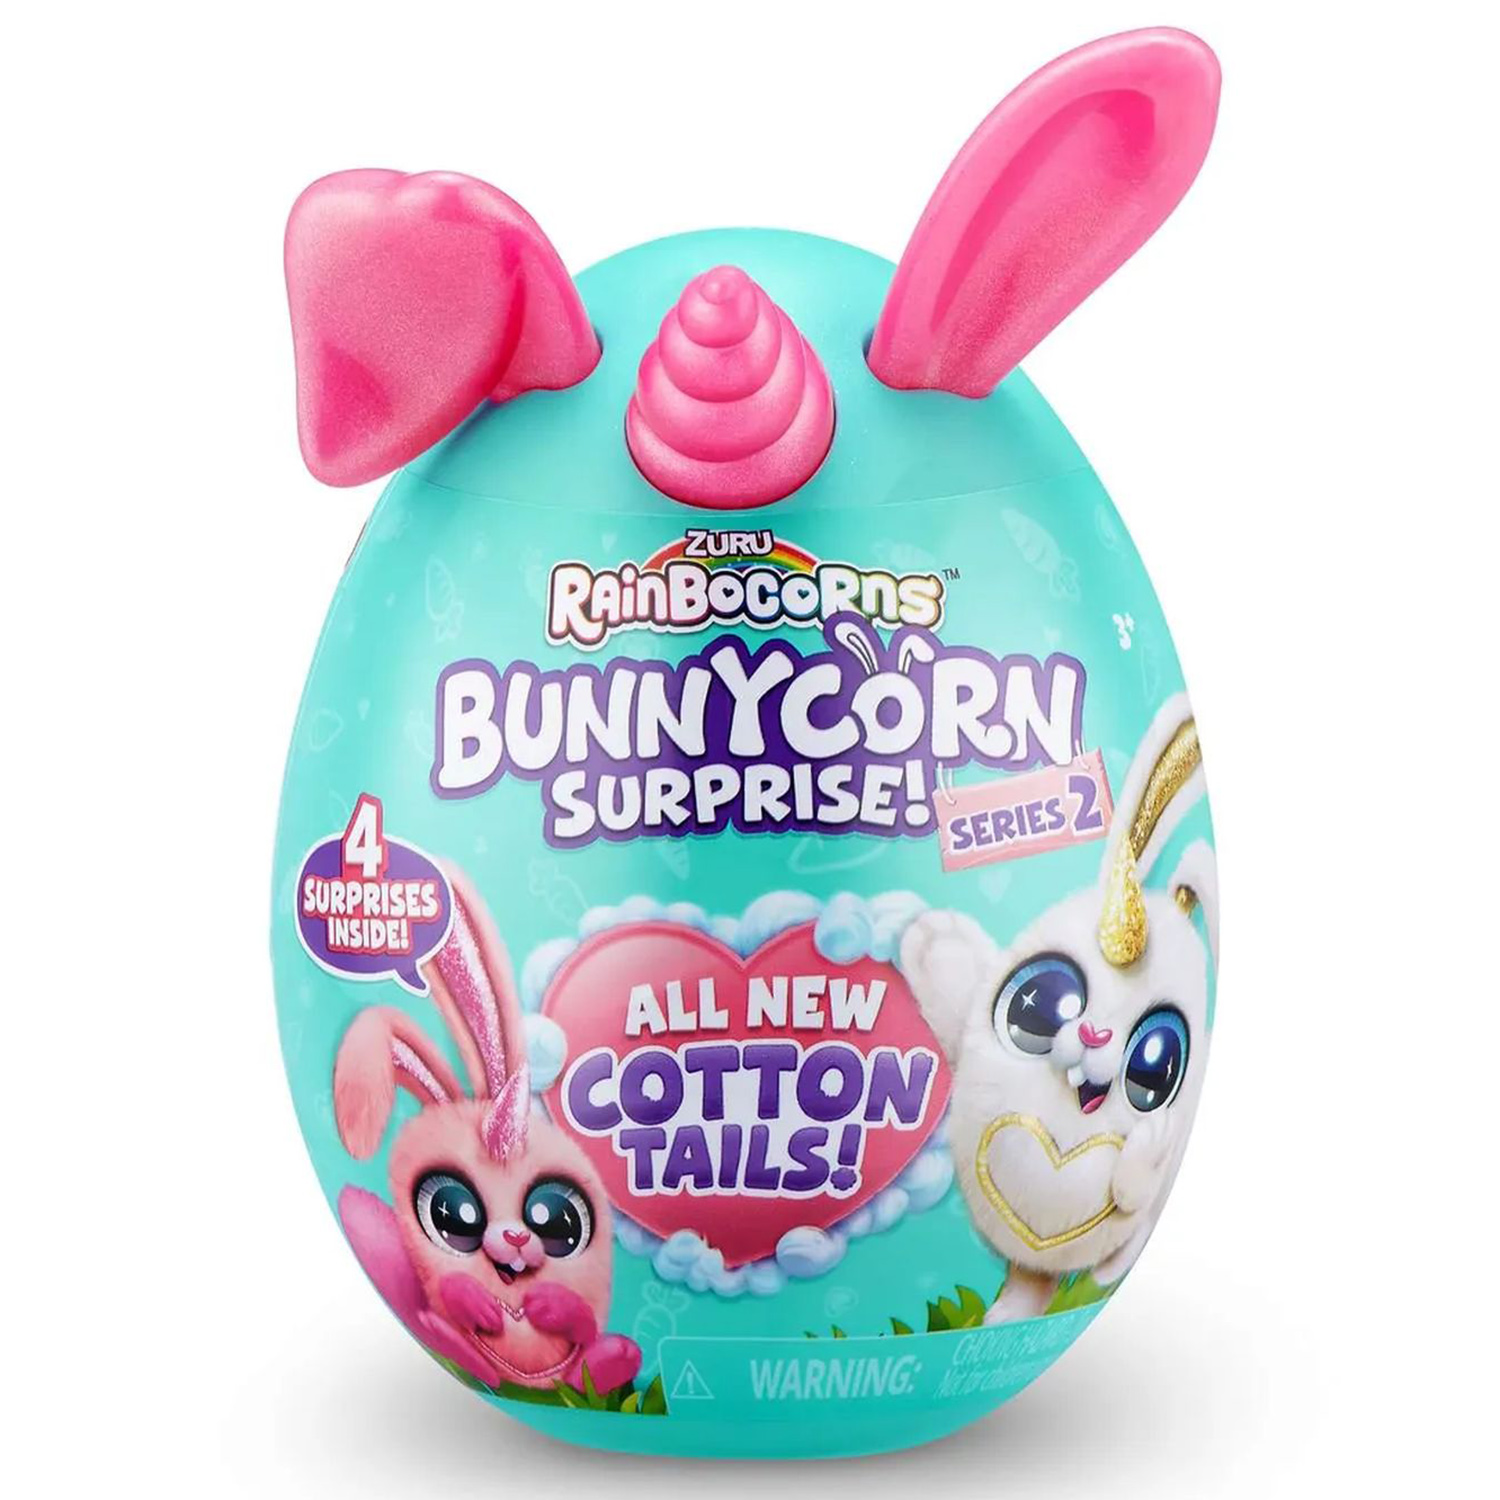 Игровой набор Zuru Rainbocorns Bunnycorn, сюрпризы в яйце серия 2, розовые ушки